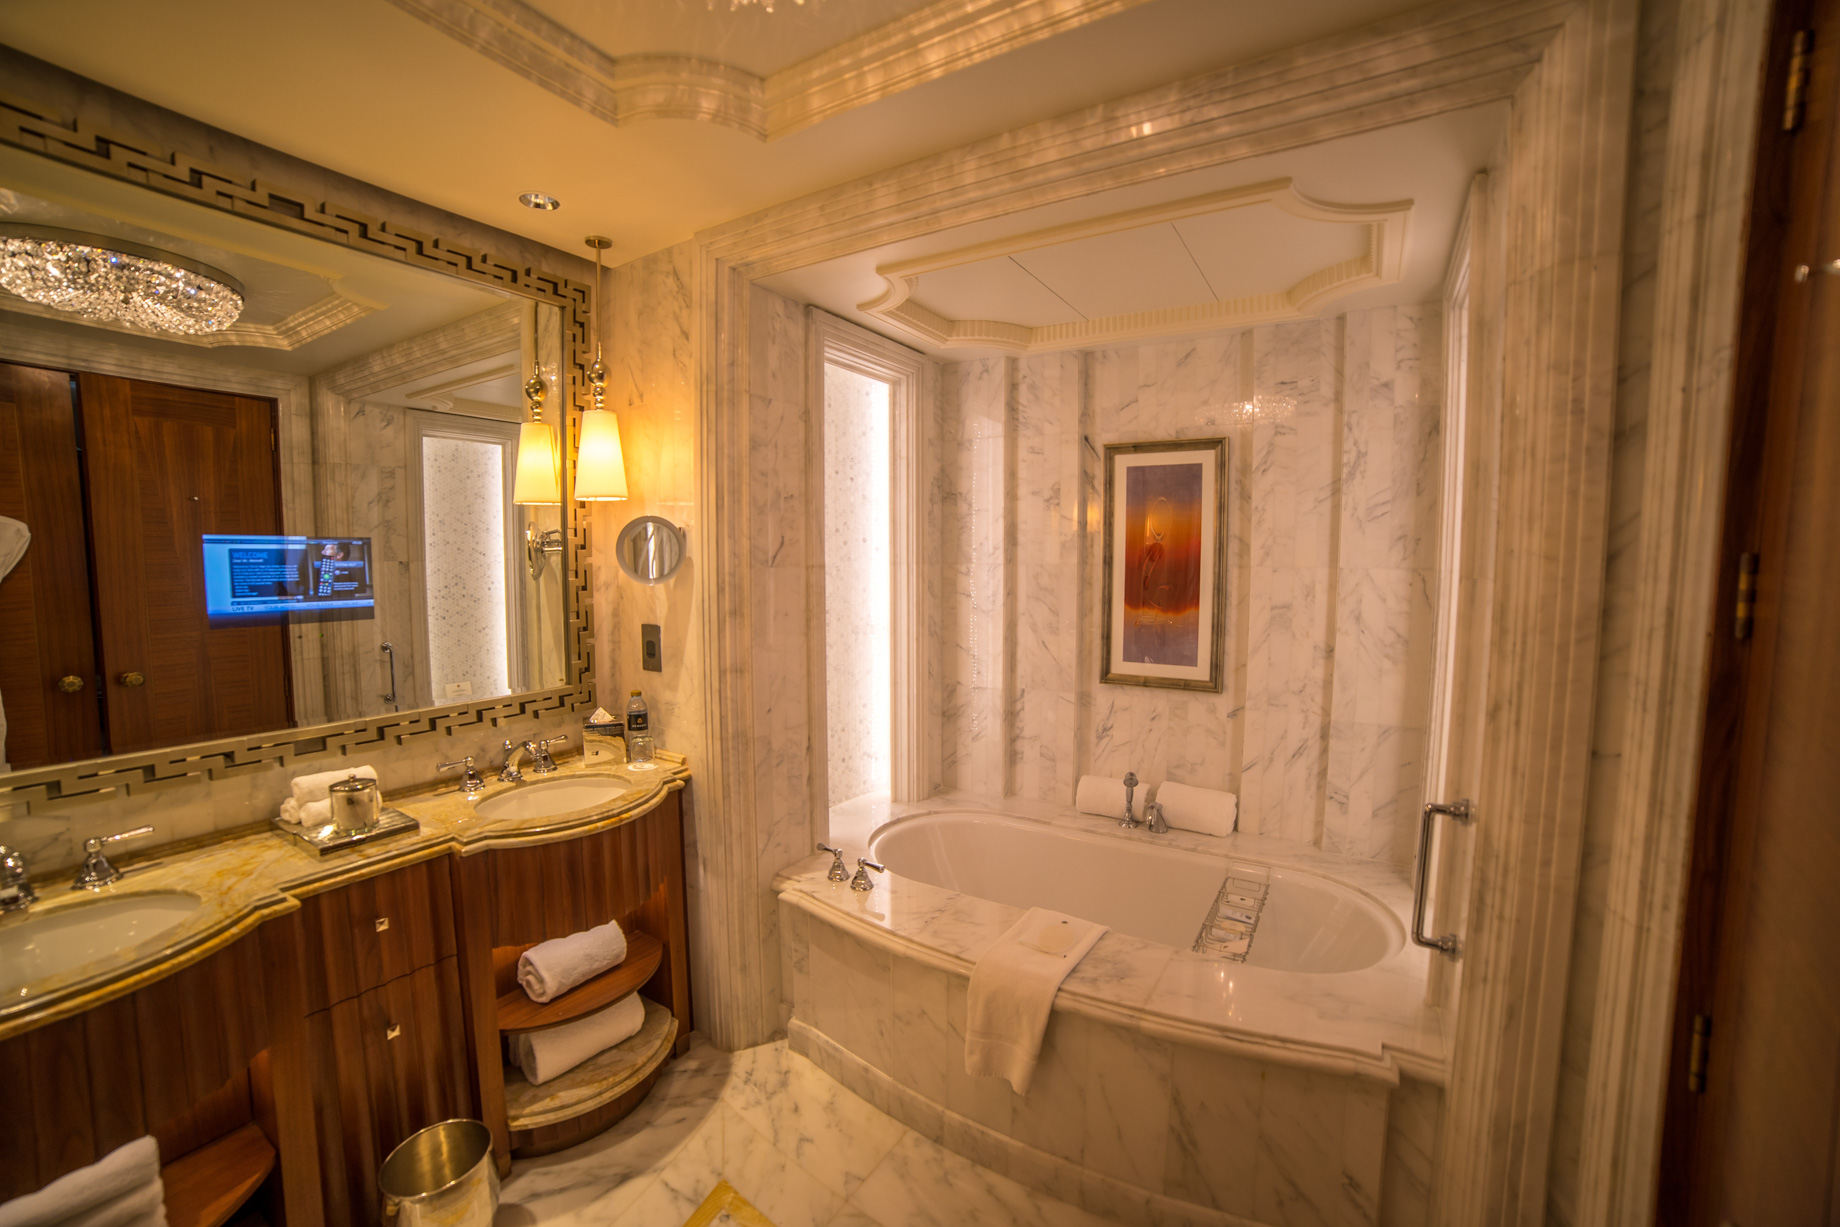 The St. Regis Abu Dhabi Hotel – Abu Dhabi, United Arab Emirates – Exceptionally Luxurious Bathroom Decor